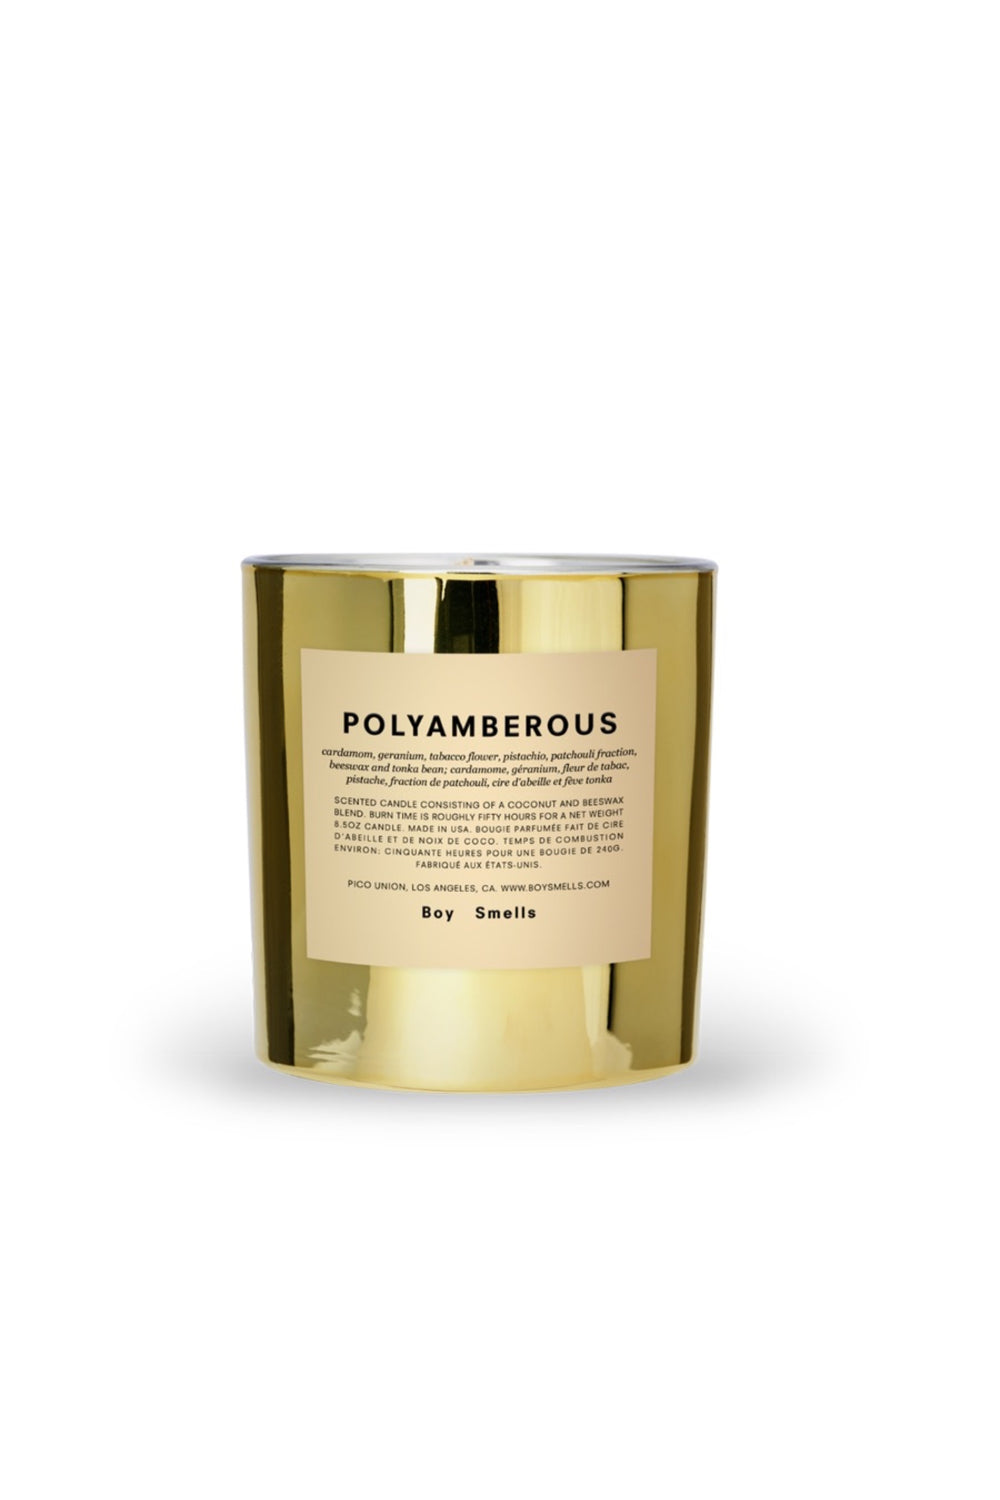 Polyamberous Candle